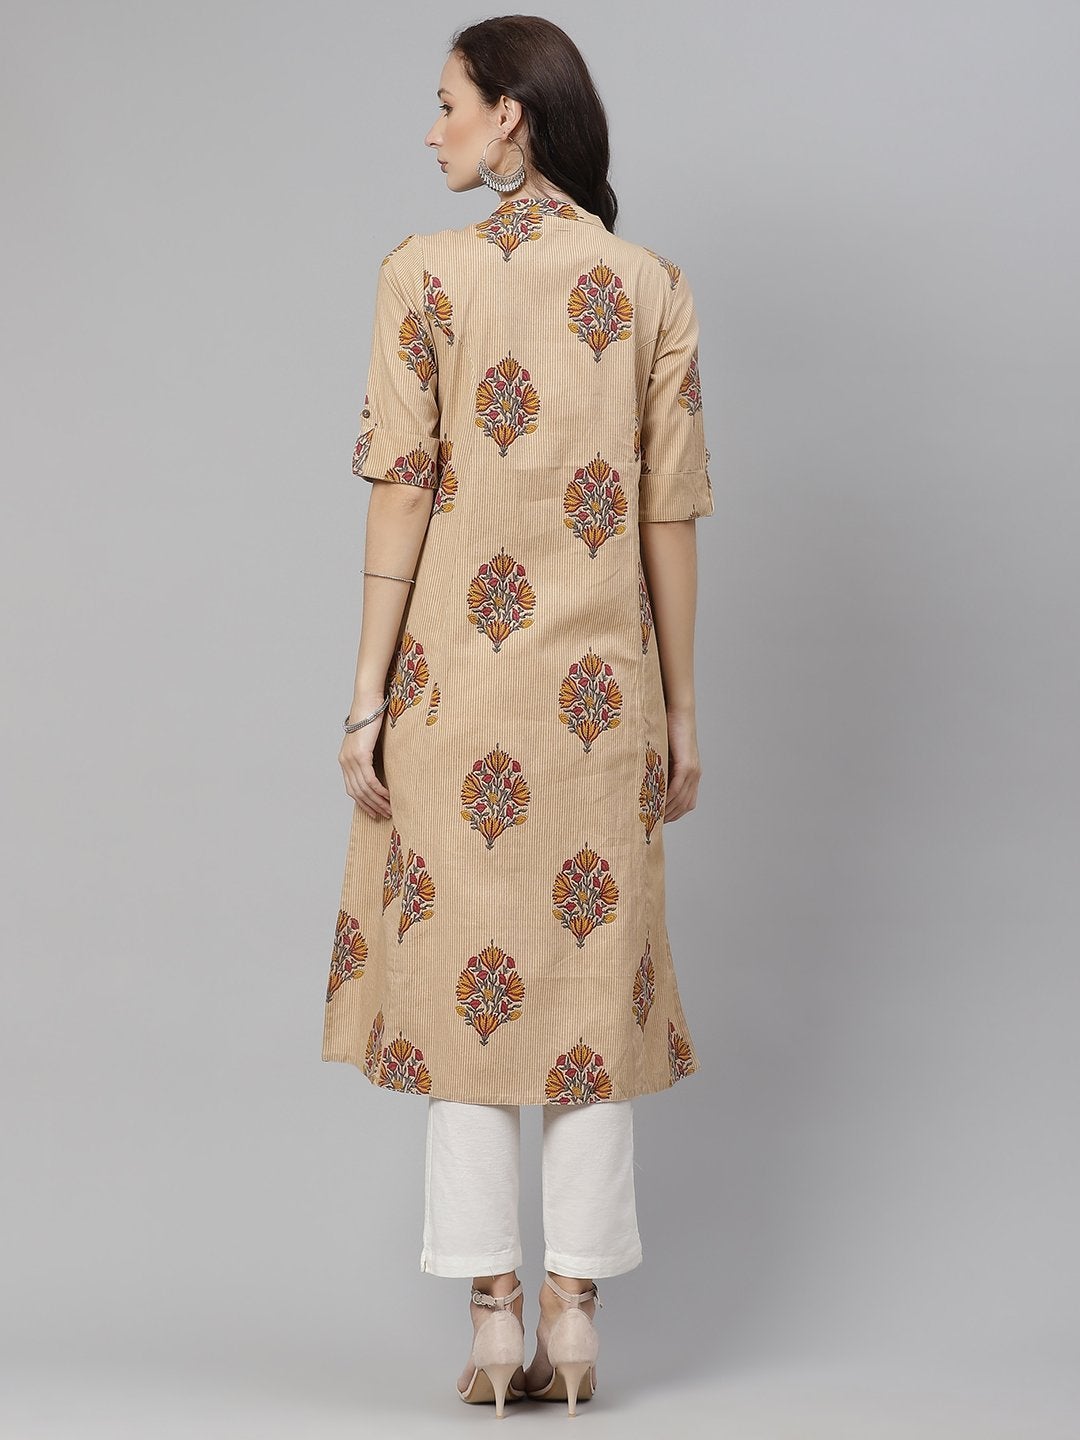 Wahe-NOOR Women's Beige Color Cotton Printed A-Line Kurta - Distacart